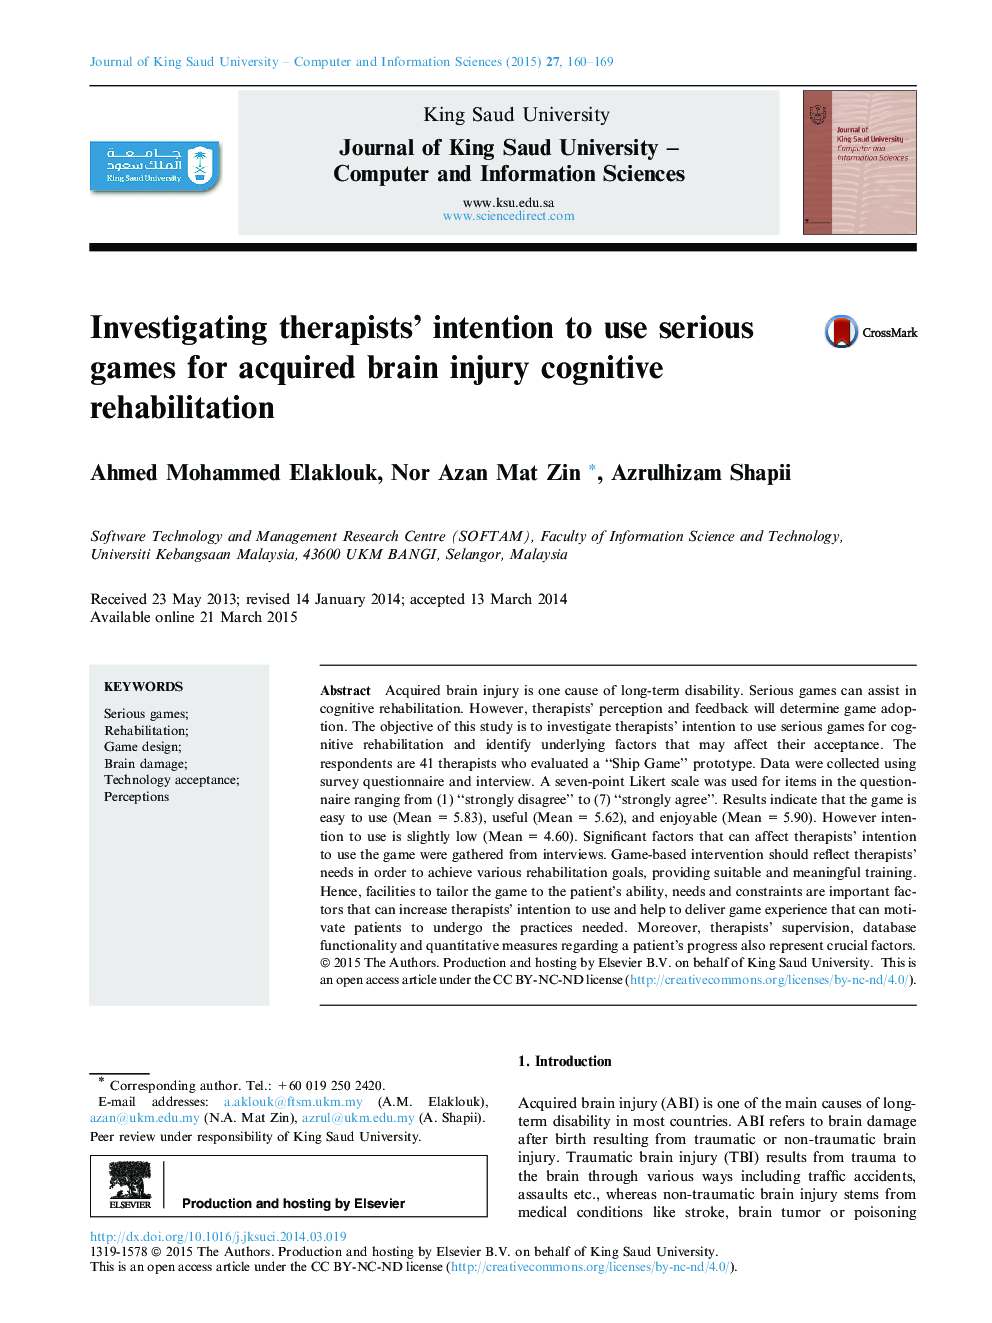 تحقیق درمانگر قصد استفاده از بازی های جدی برای توانبخشی شناختی آسیب دیده مغز 